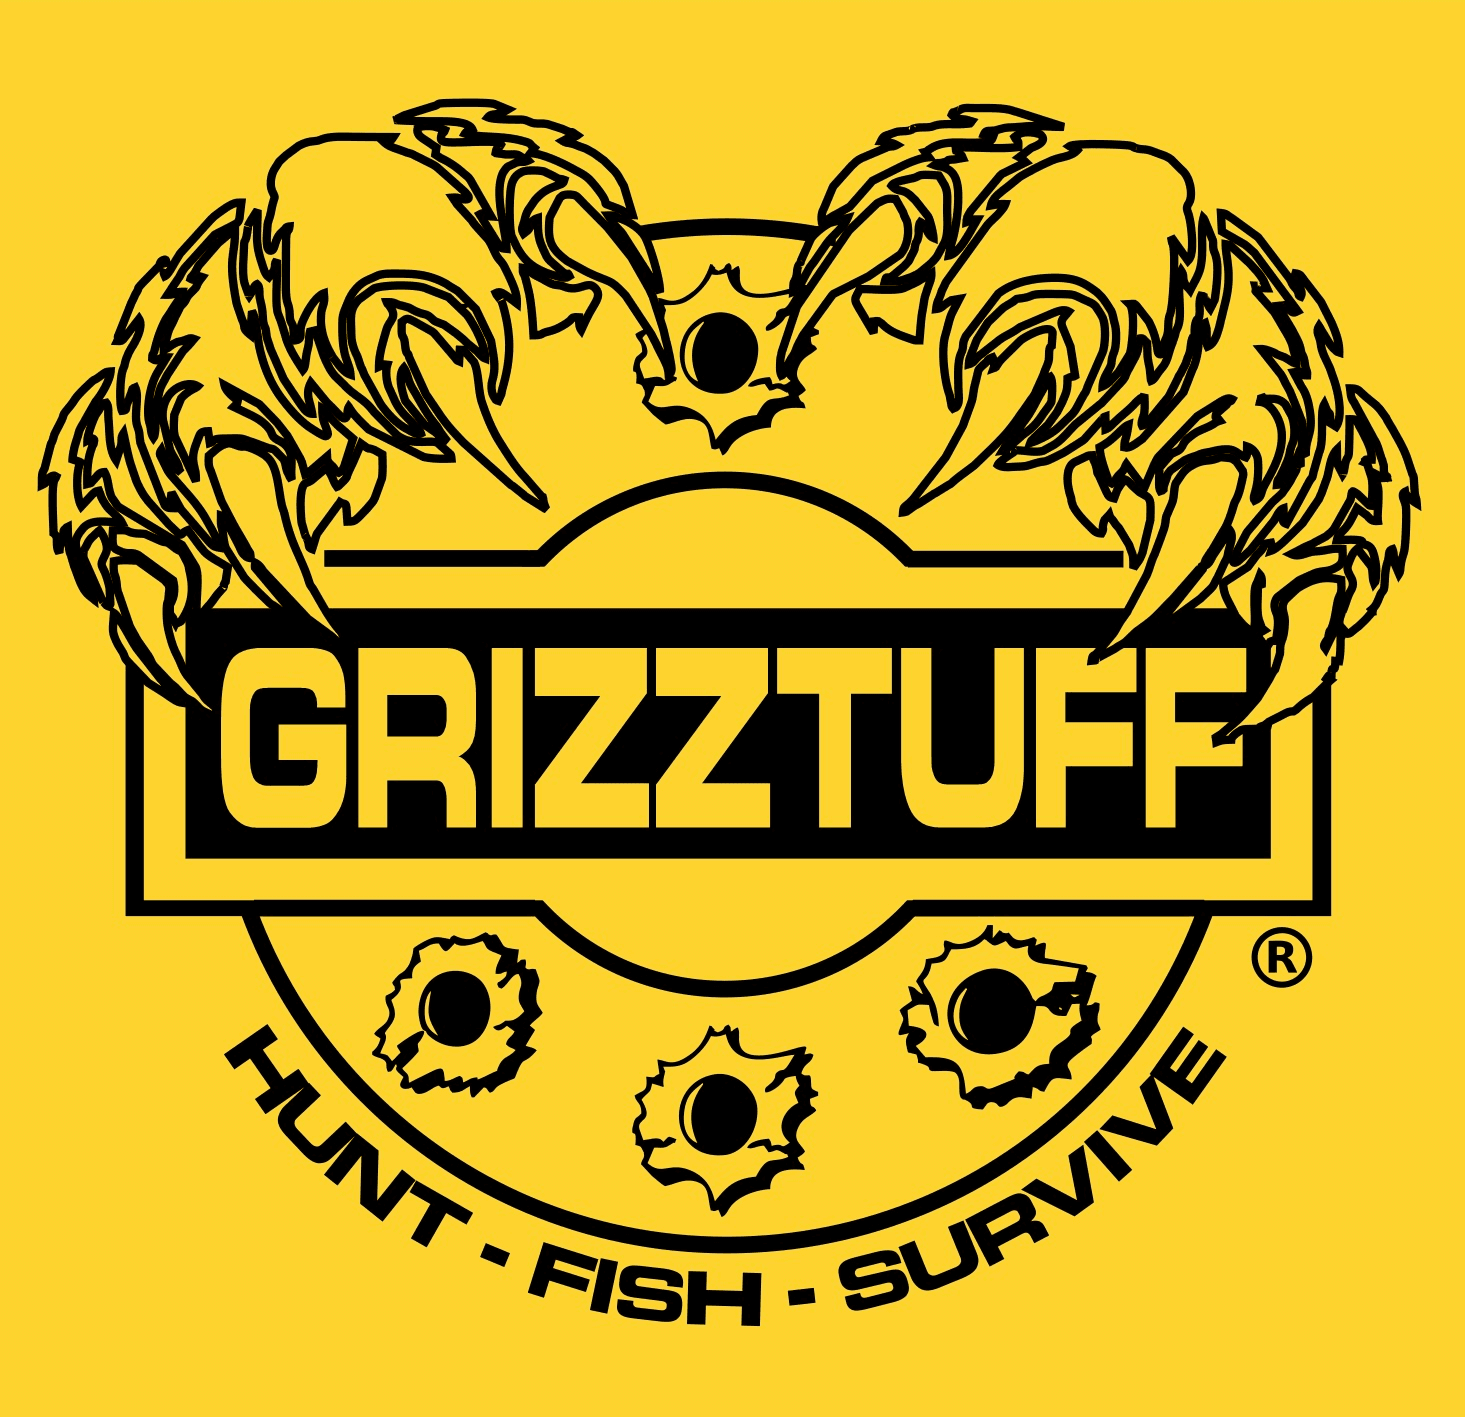 GrizzTuff